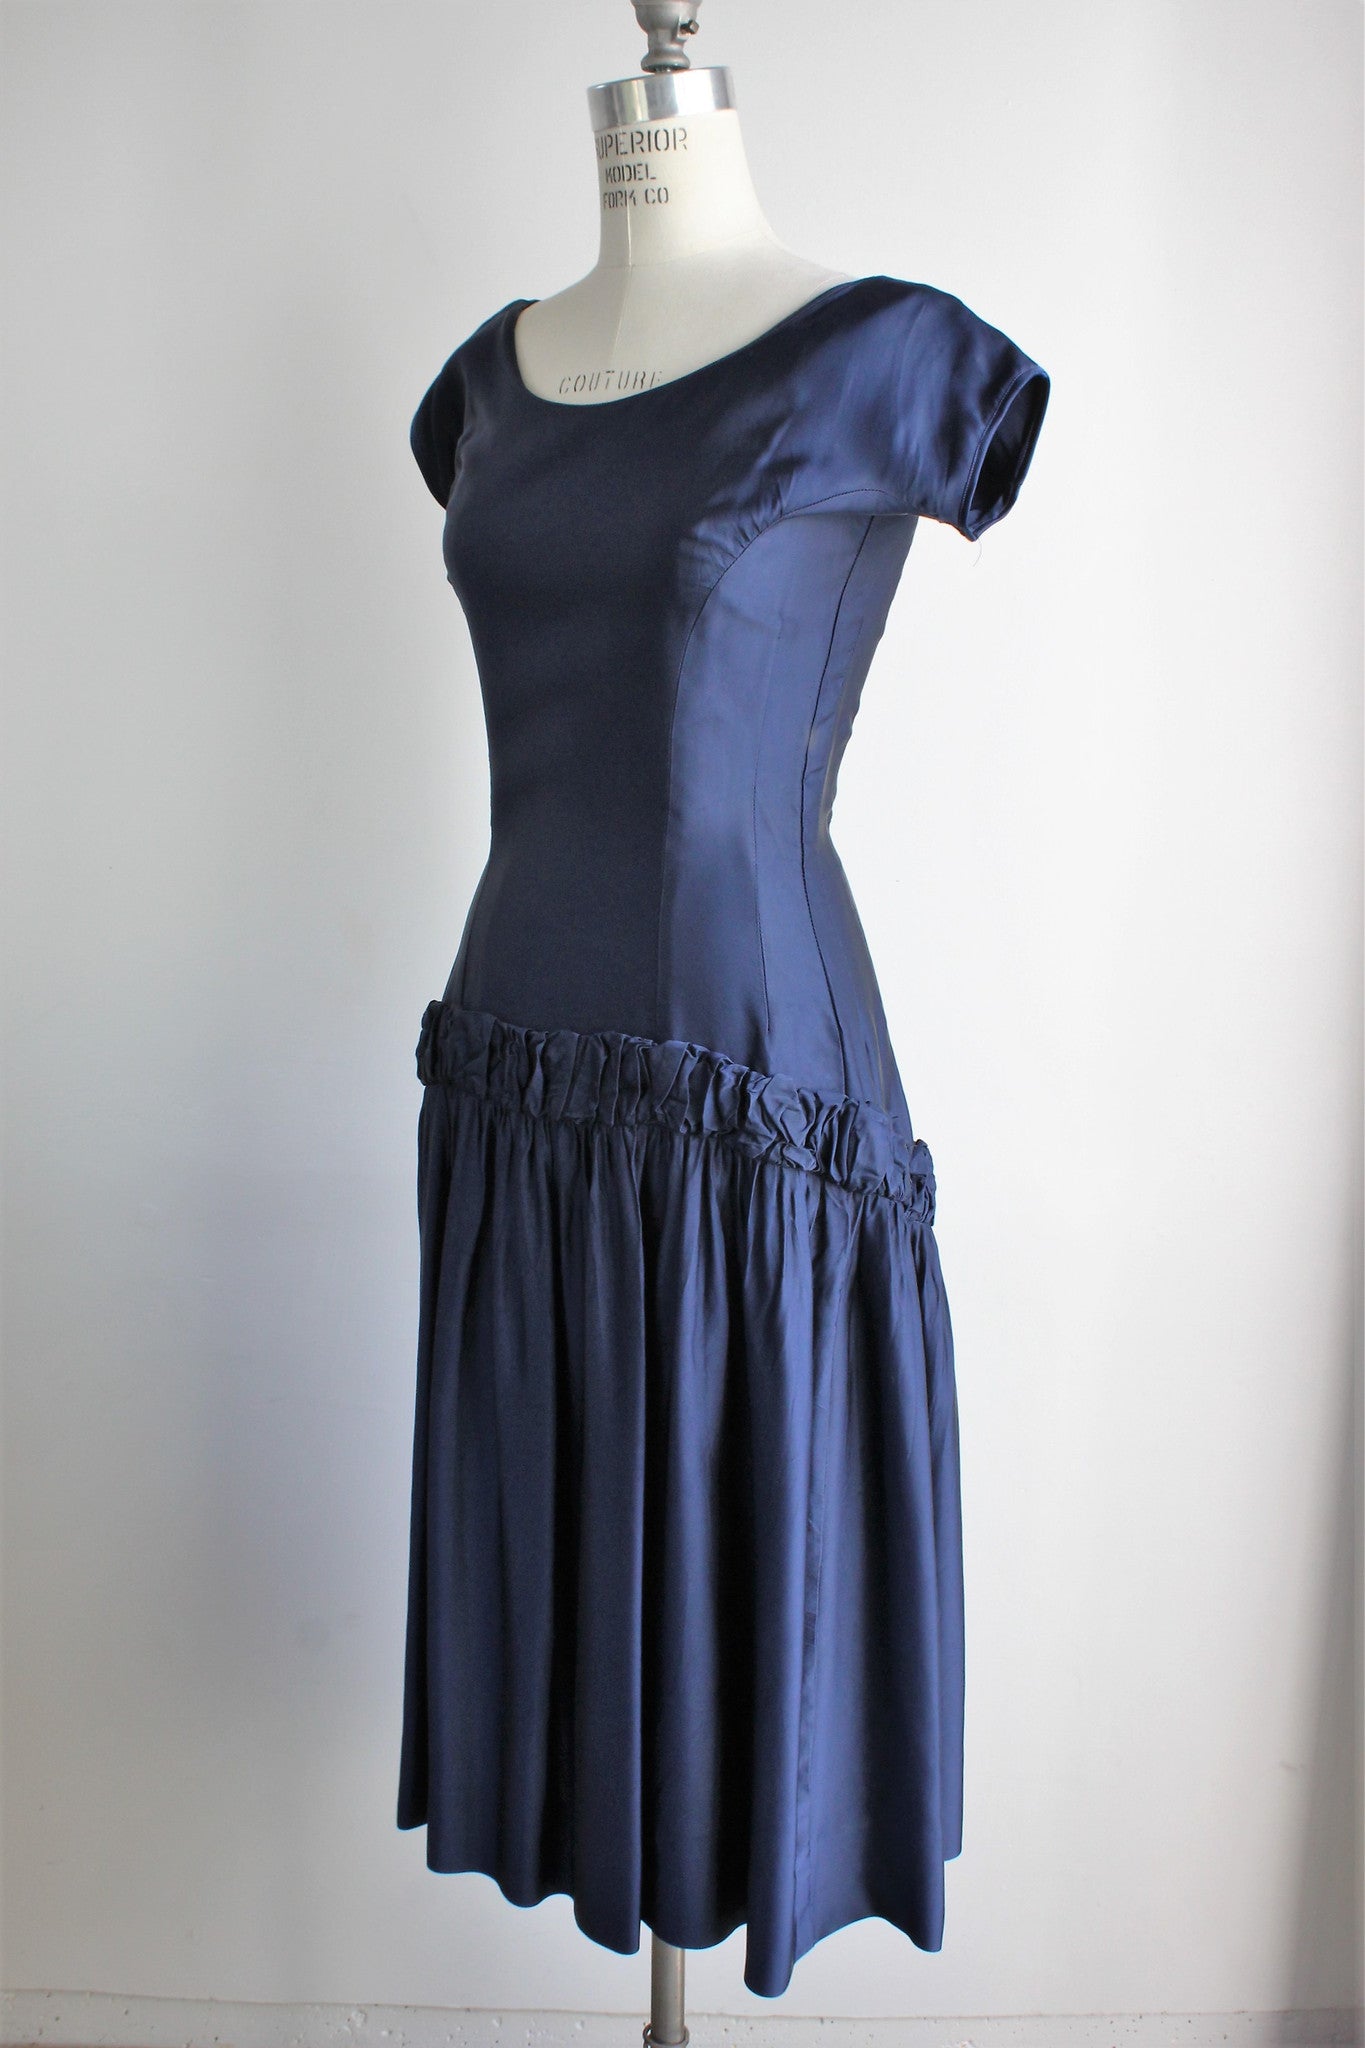 Vintage 1950s Louis Faruad Navy Blue Shift Dress – Vintage World Rocks